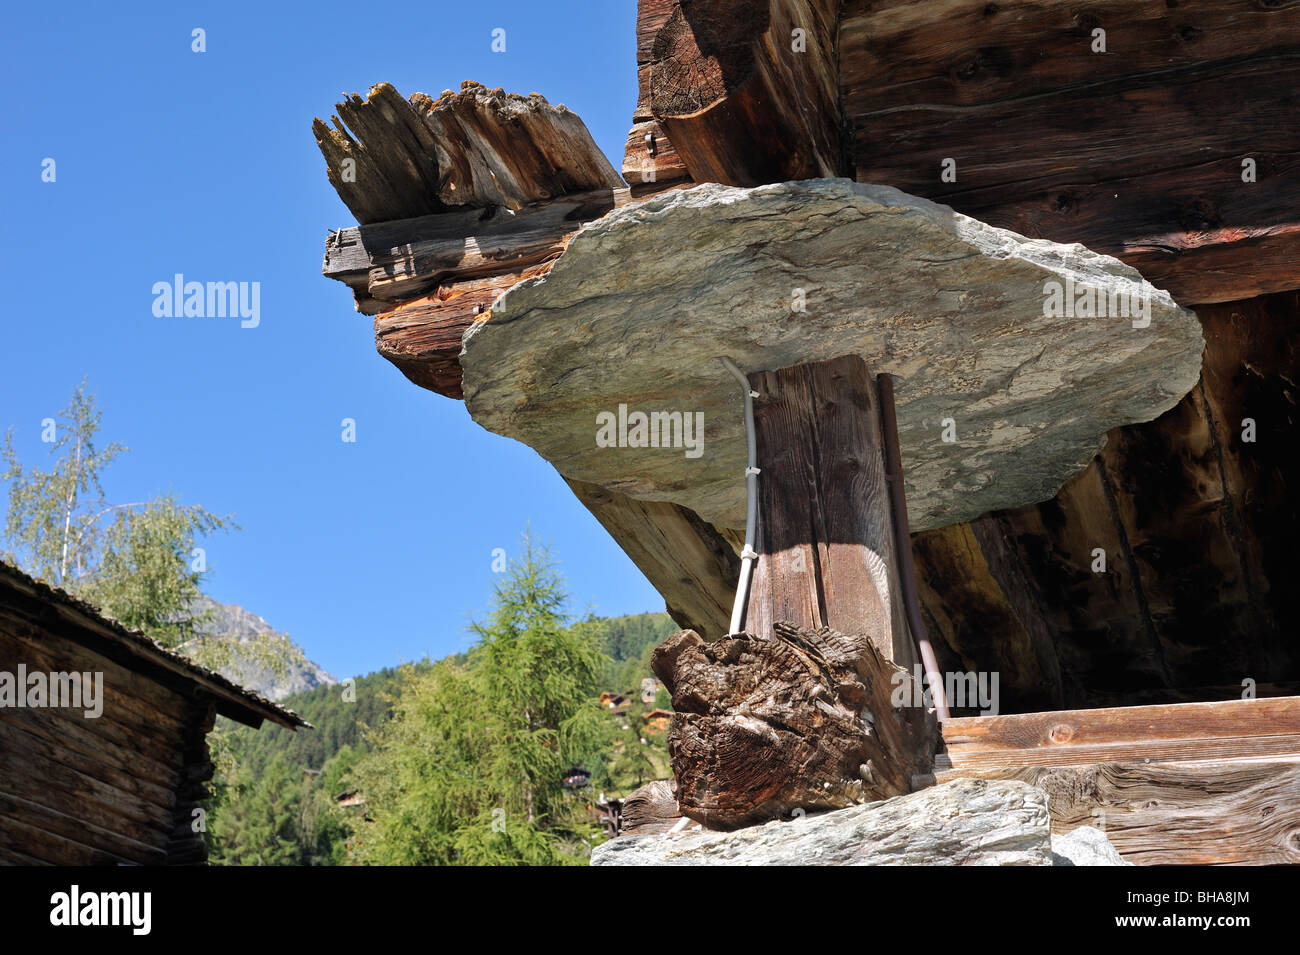 Traditionelle hölzerne Getreidespeicher / Raccard mit runden Stein Platten  um zu verhindern, dass Nagetiere in, Wallis, Schweiz Stockfotografie - Alamy